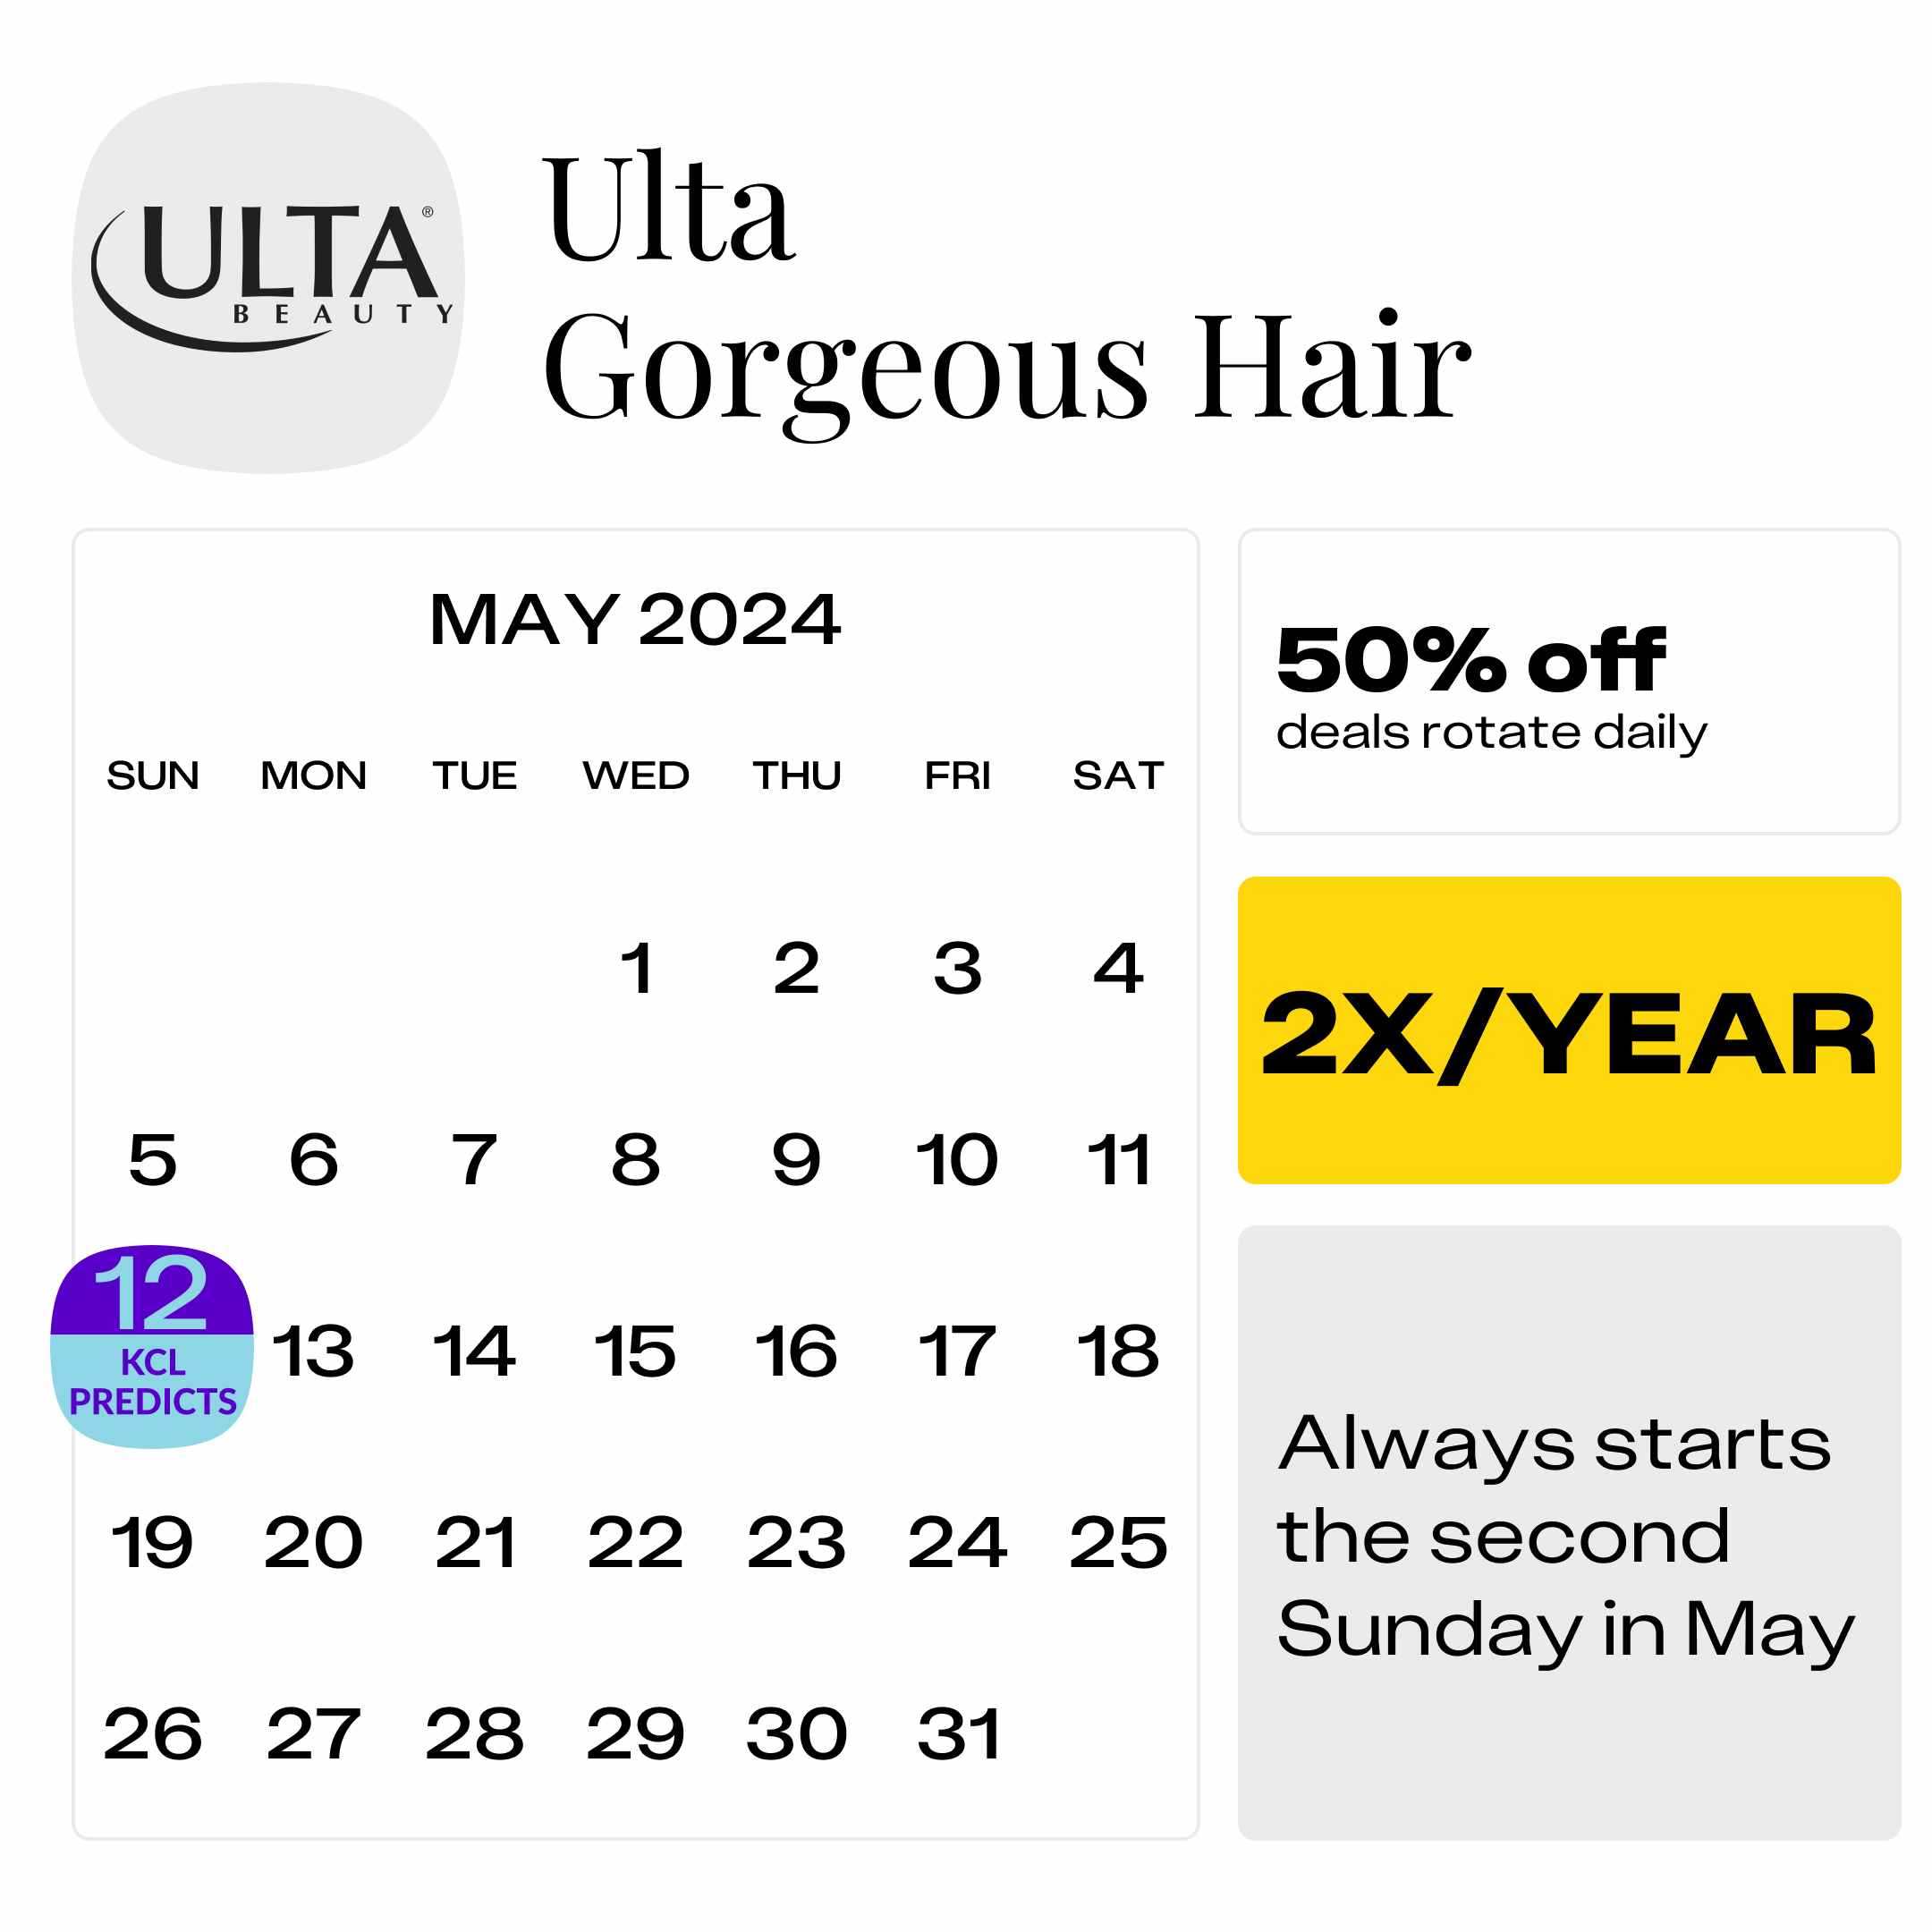 Ulta-Gorgeous-Hair